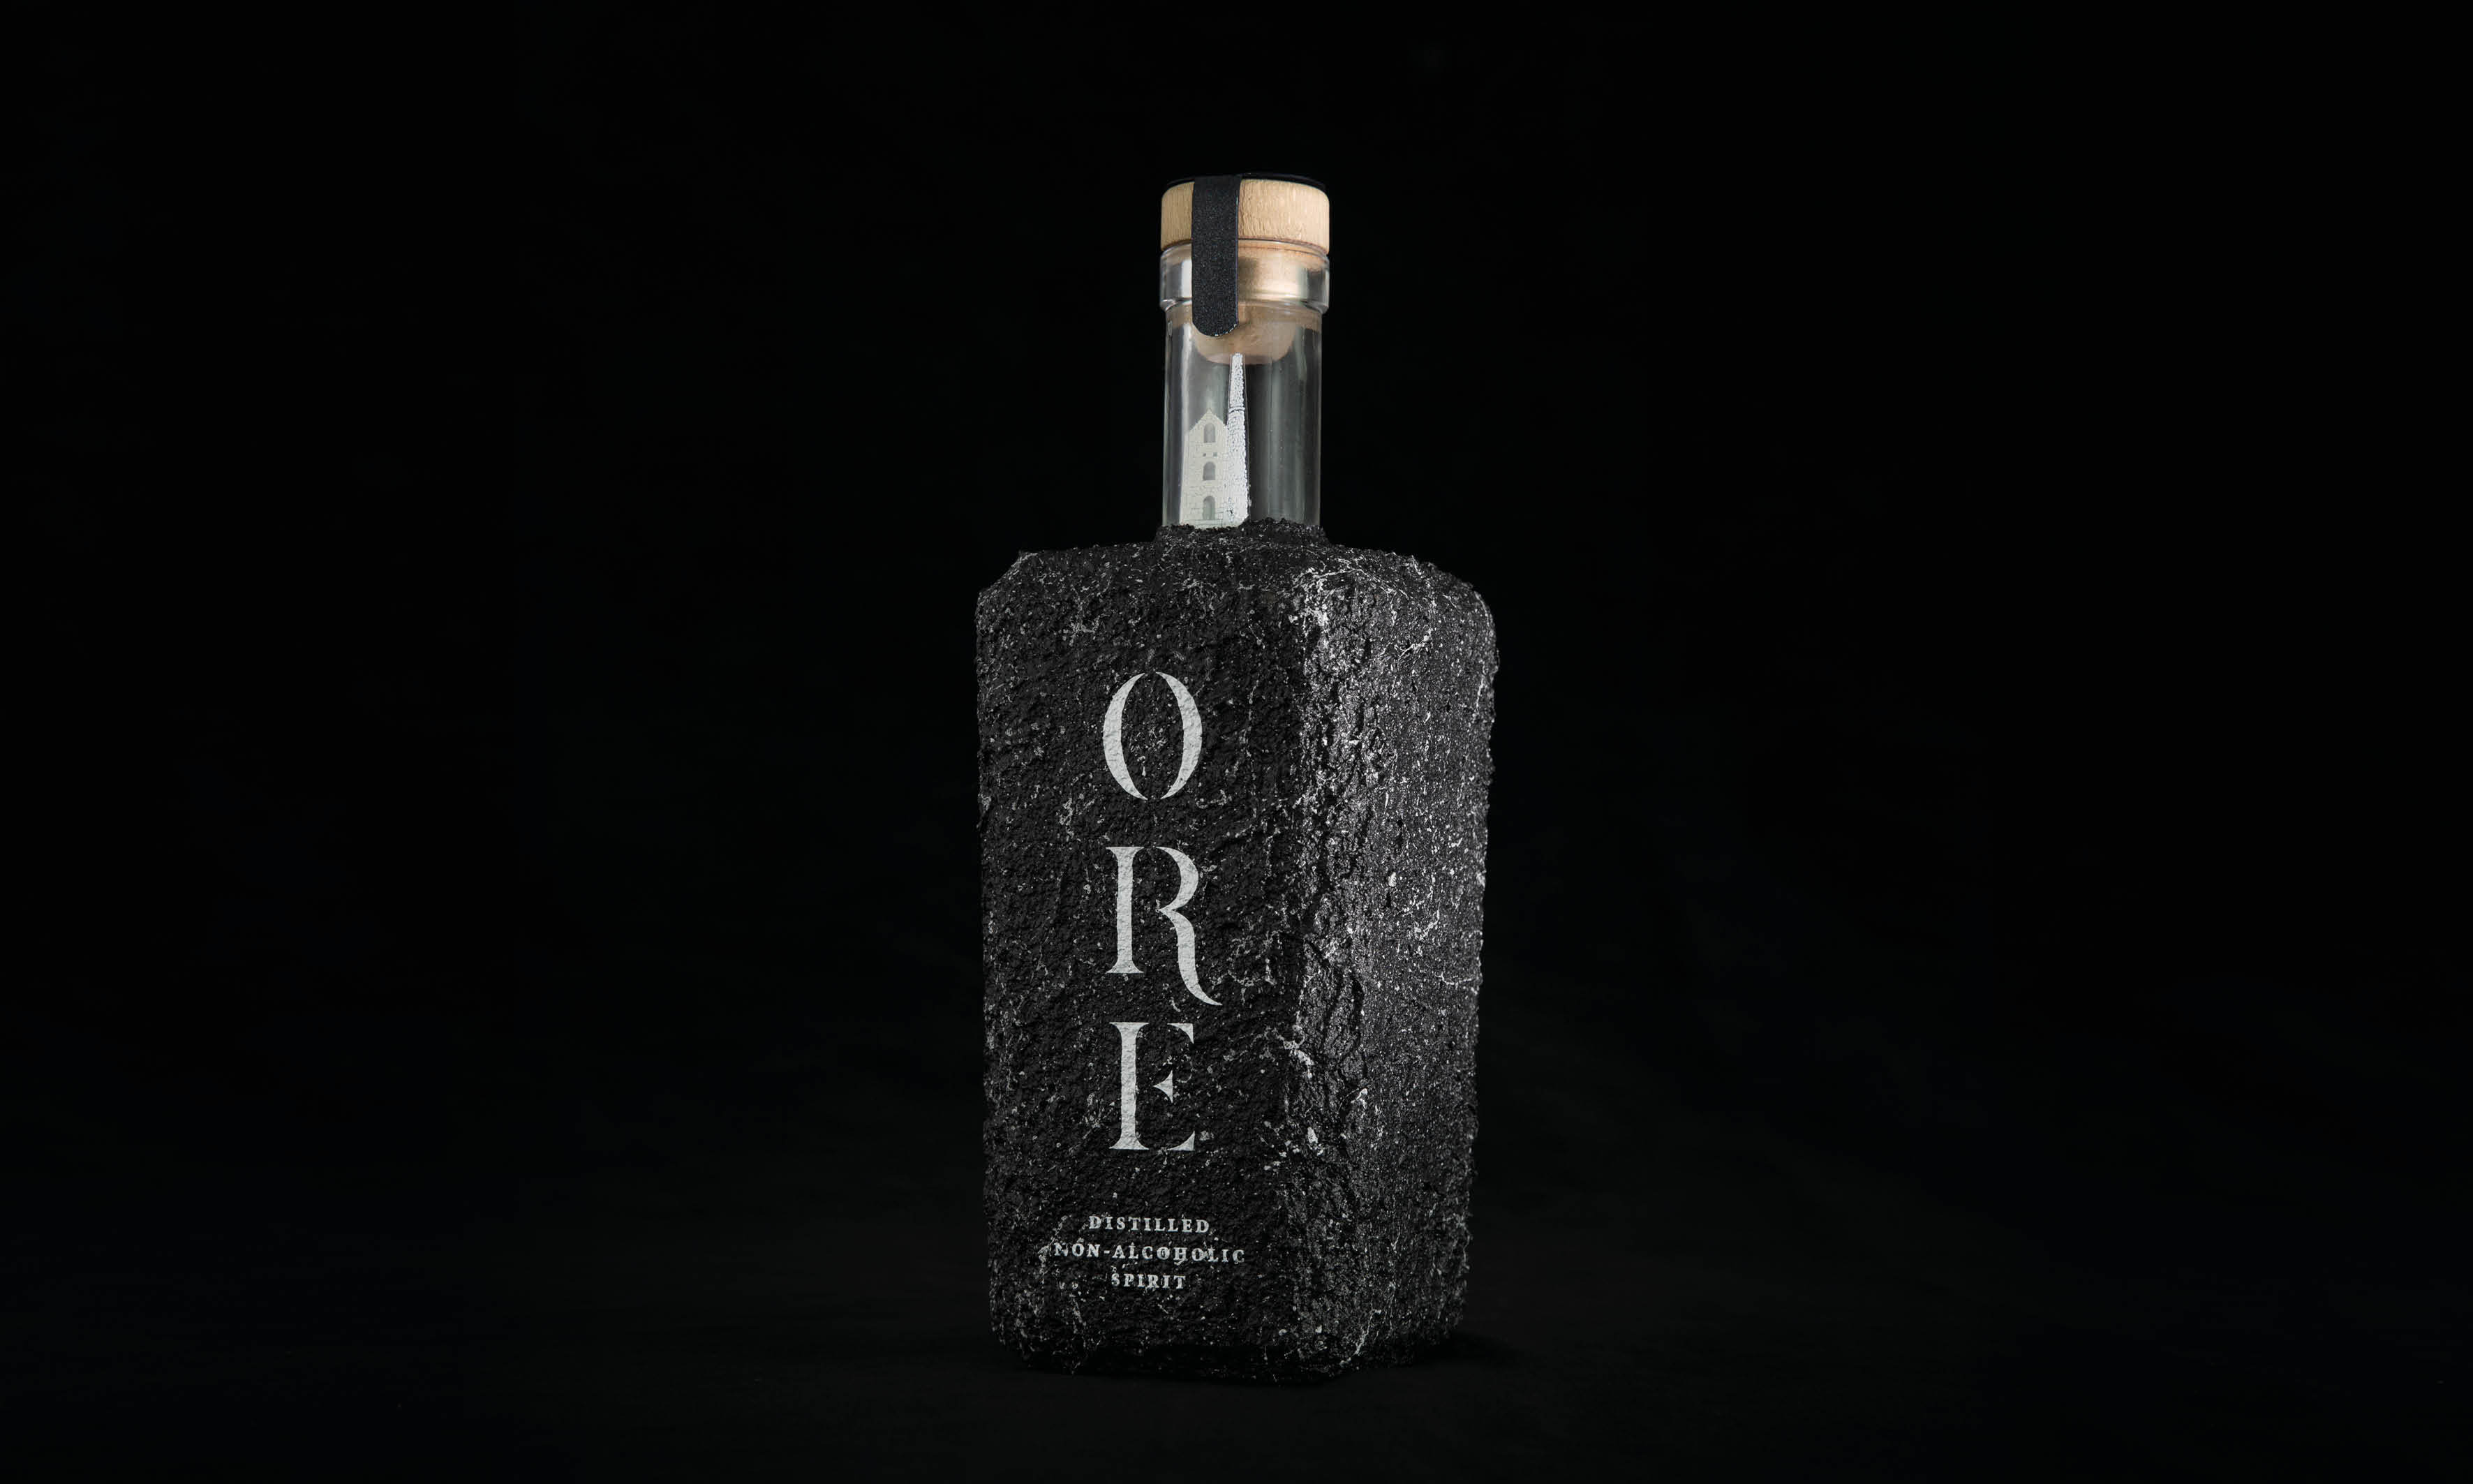 Student Concept for Distilled Non-Alcoholic Cornish Spirit Ore